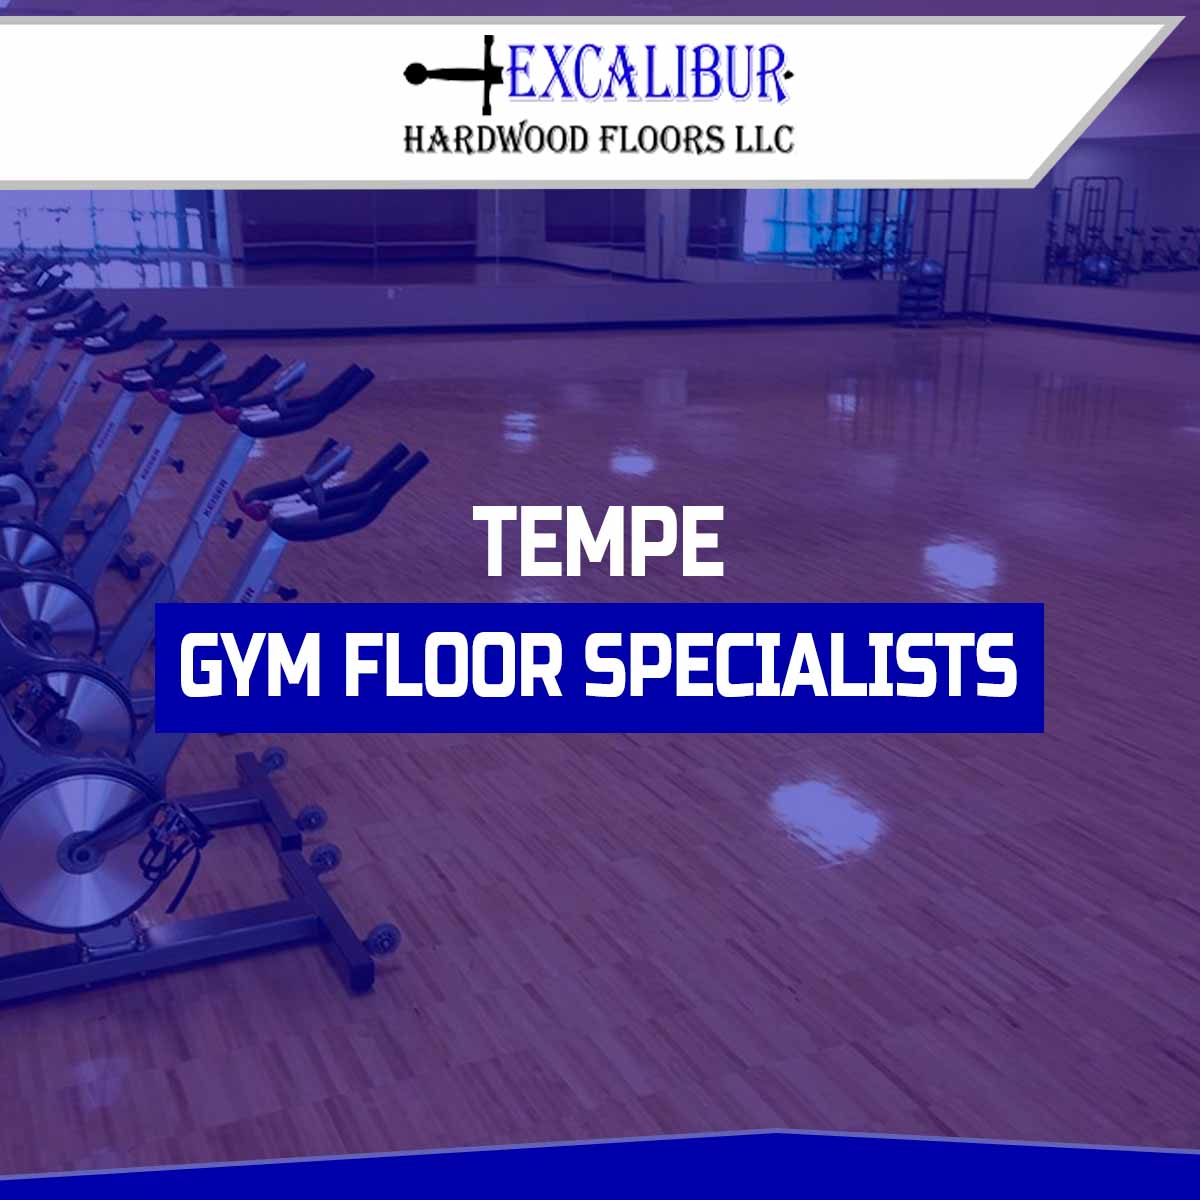 Tempe Gym Floor Specialists https://excaliburhardwoodfloors.com/